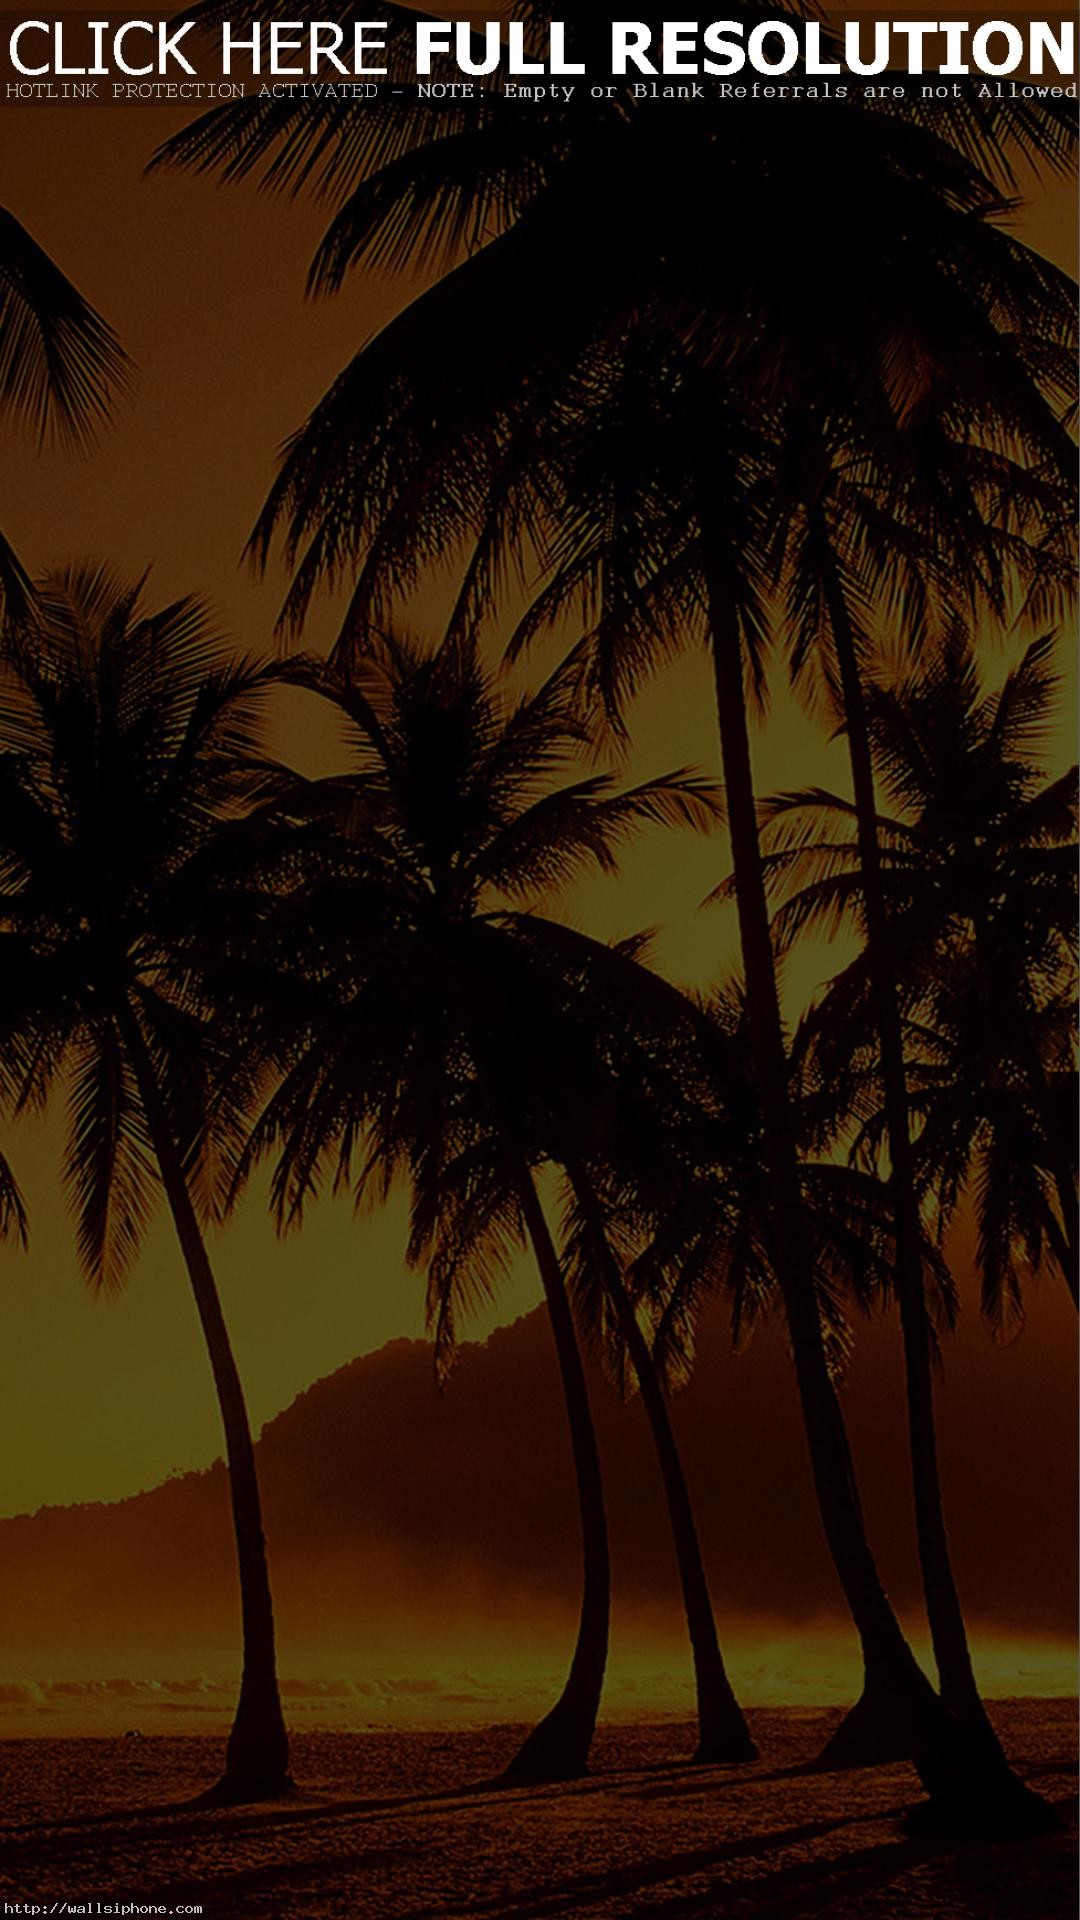 1080x1920 Palm Trees at Beach